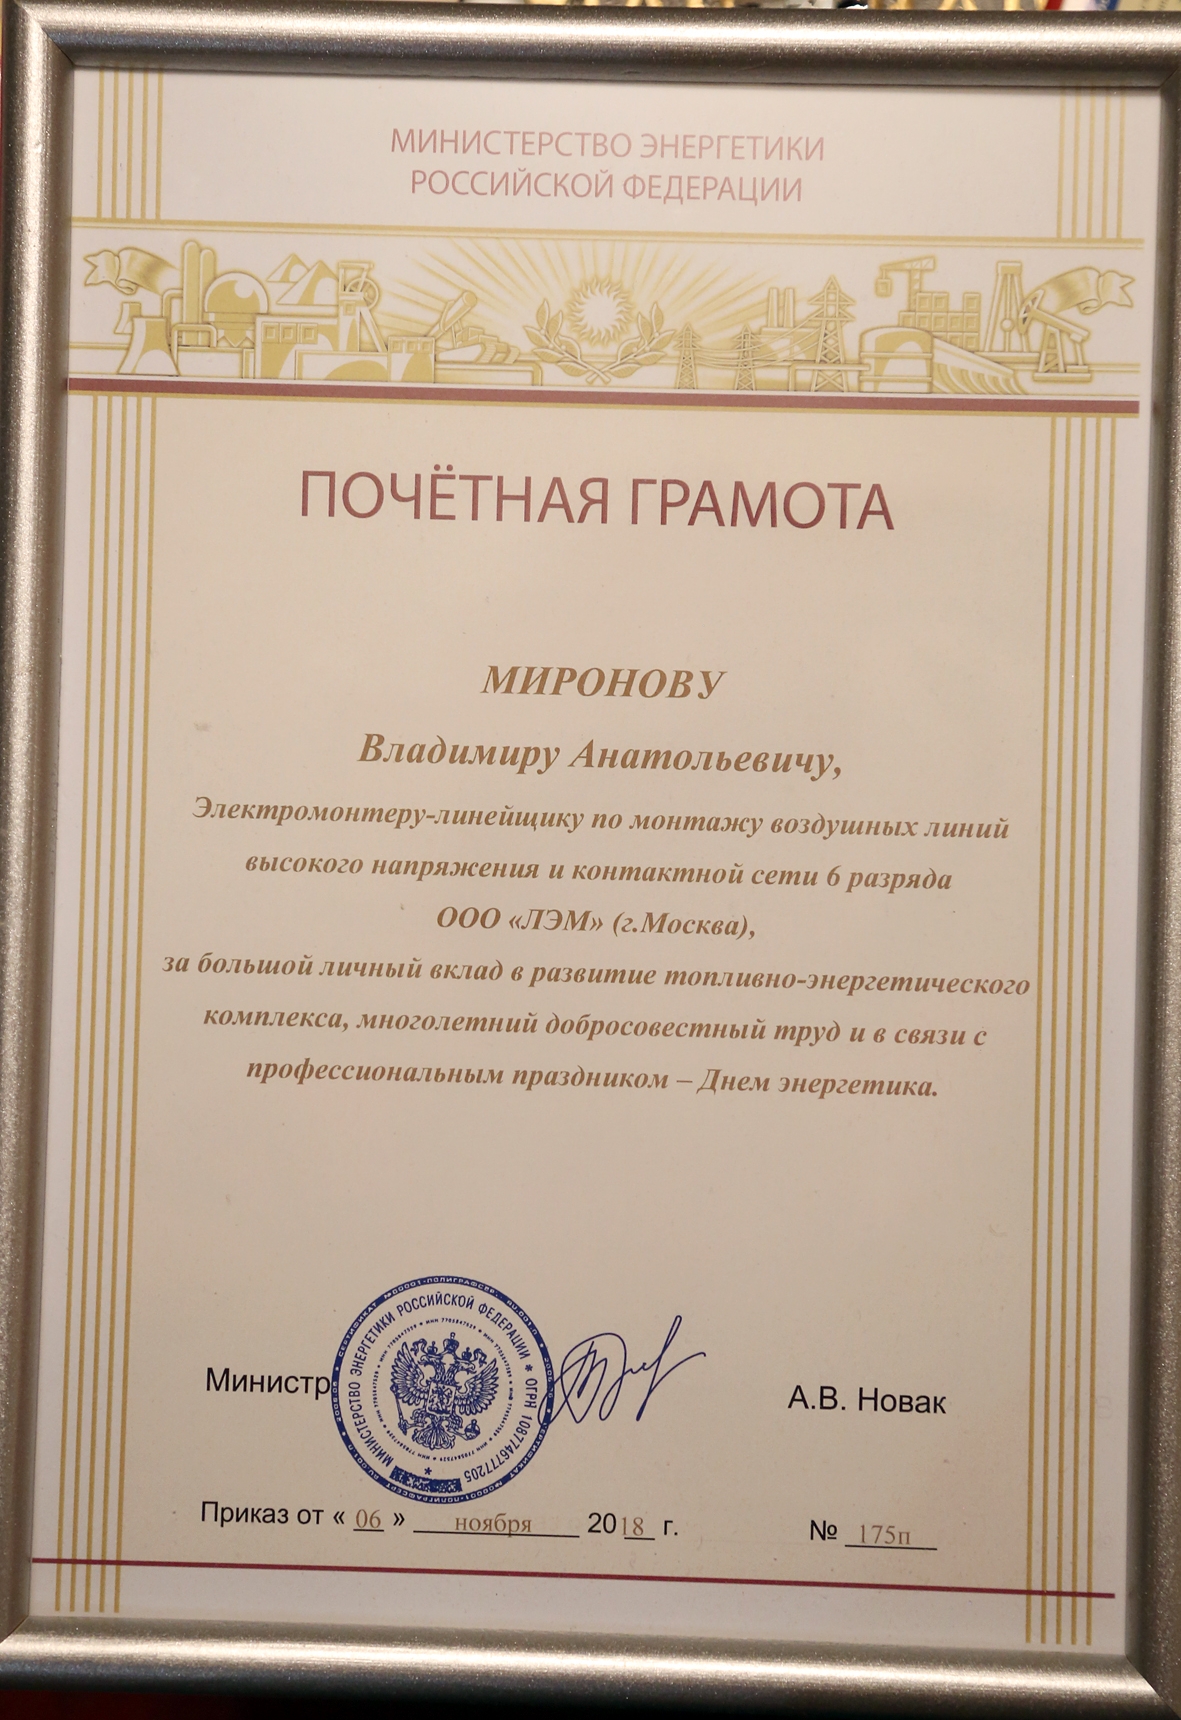 Награждение Почетной грамотой Минэнерго в 2018 году